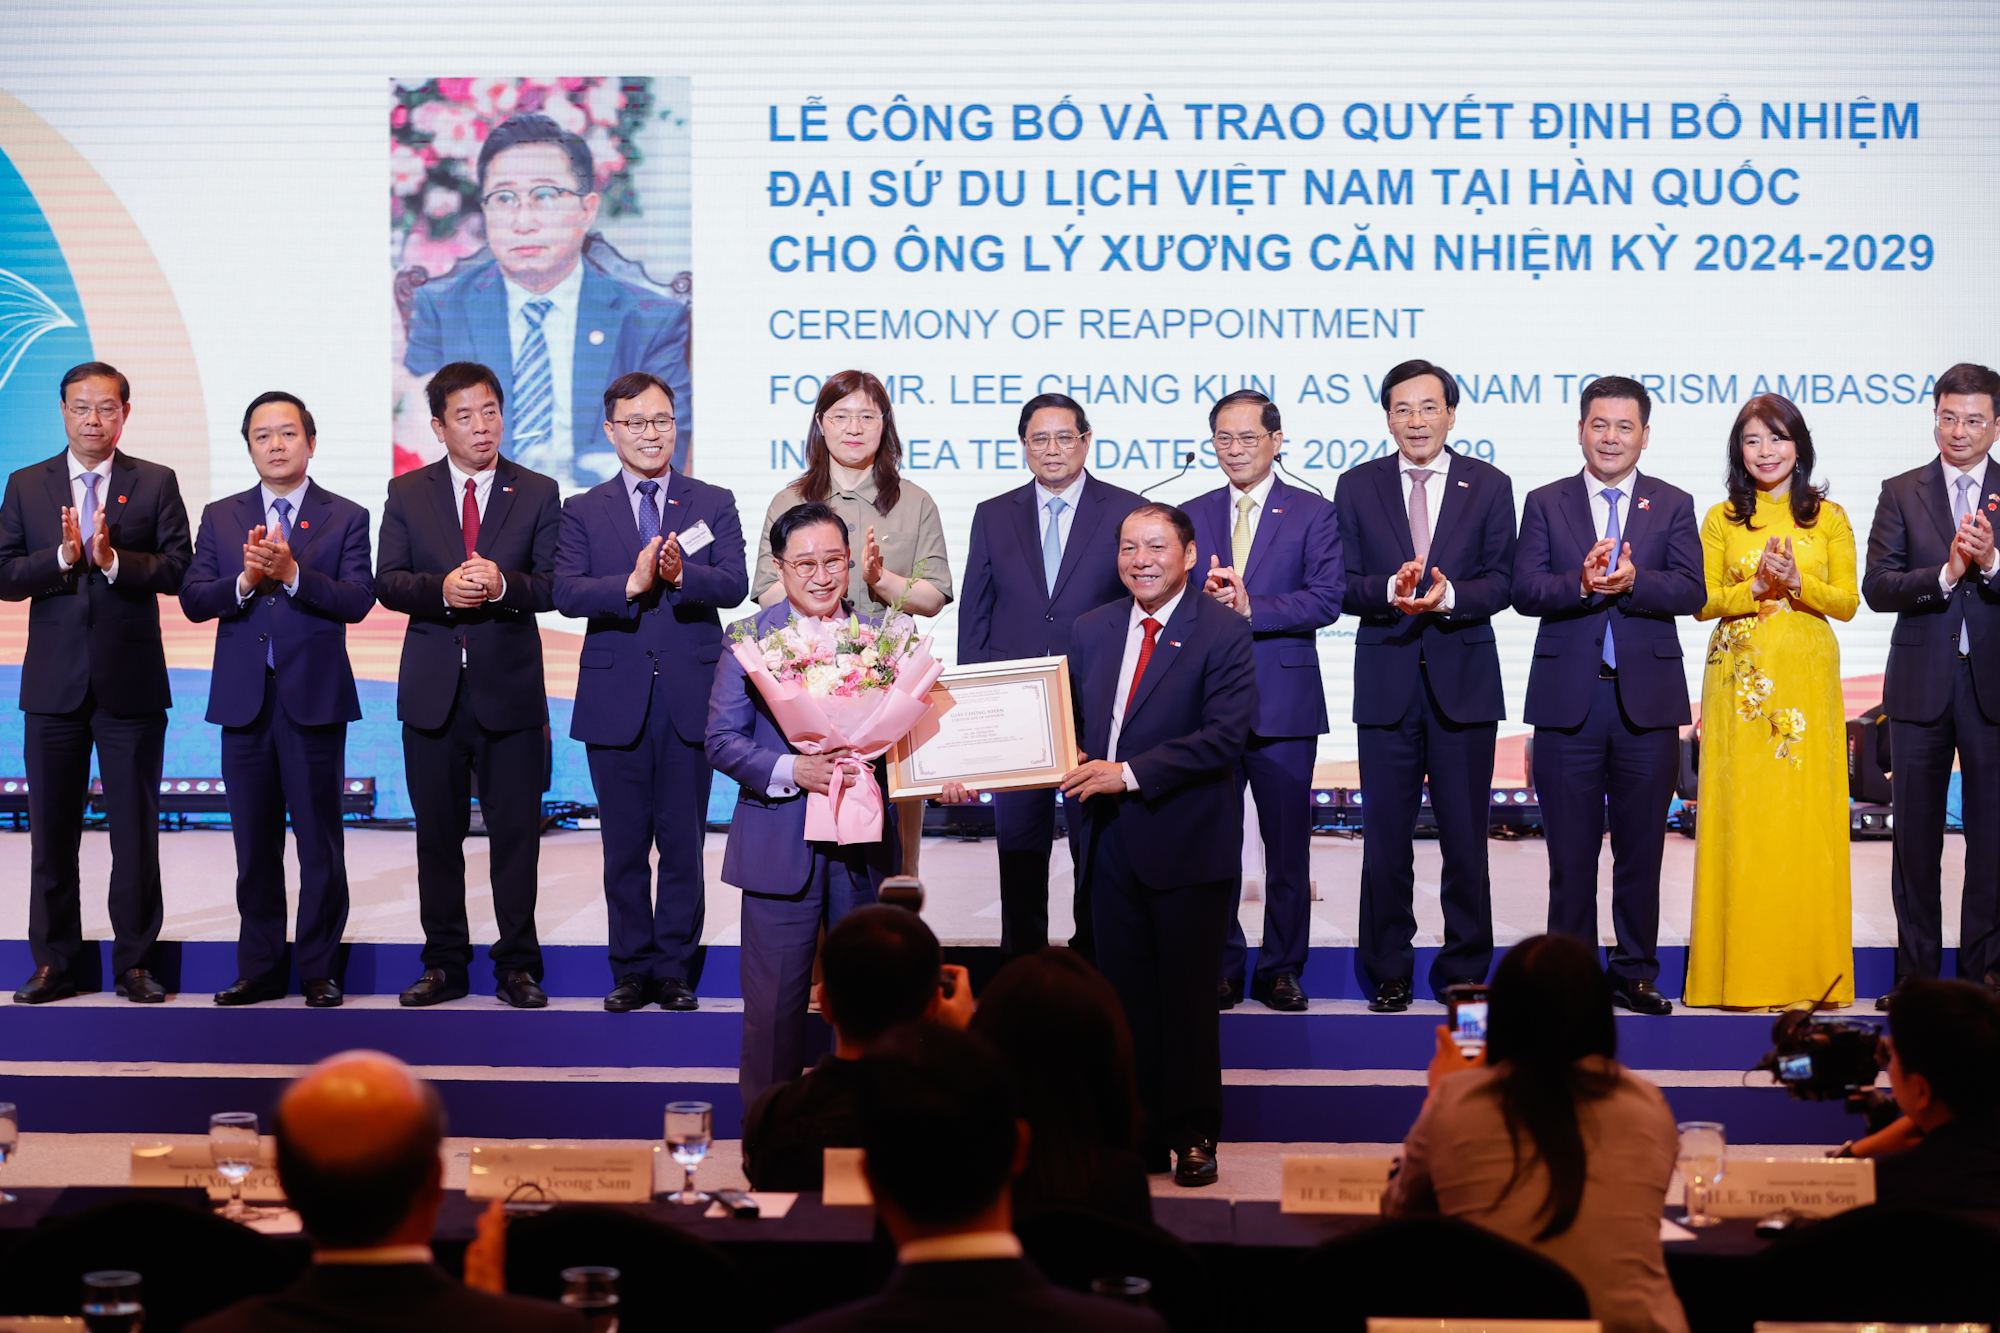 Lễ công bố và trao Quyết định bổ nhiệm Đại sứ Du lịch Việt Nam tại Hàn Quốc cho ông Lý Xương Căn nhiệm kỳ 2024-2029 - Ảnh: VGP/Nhật Bắc